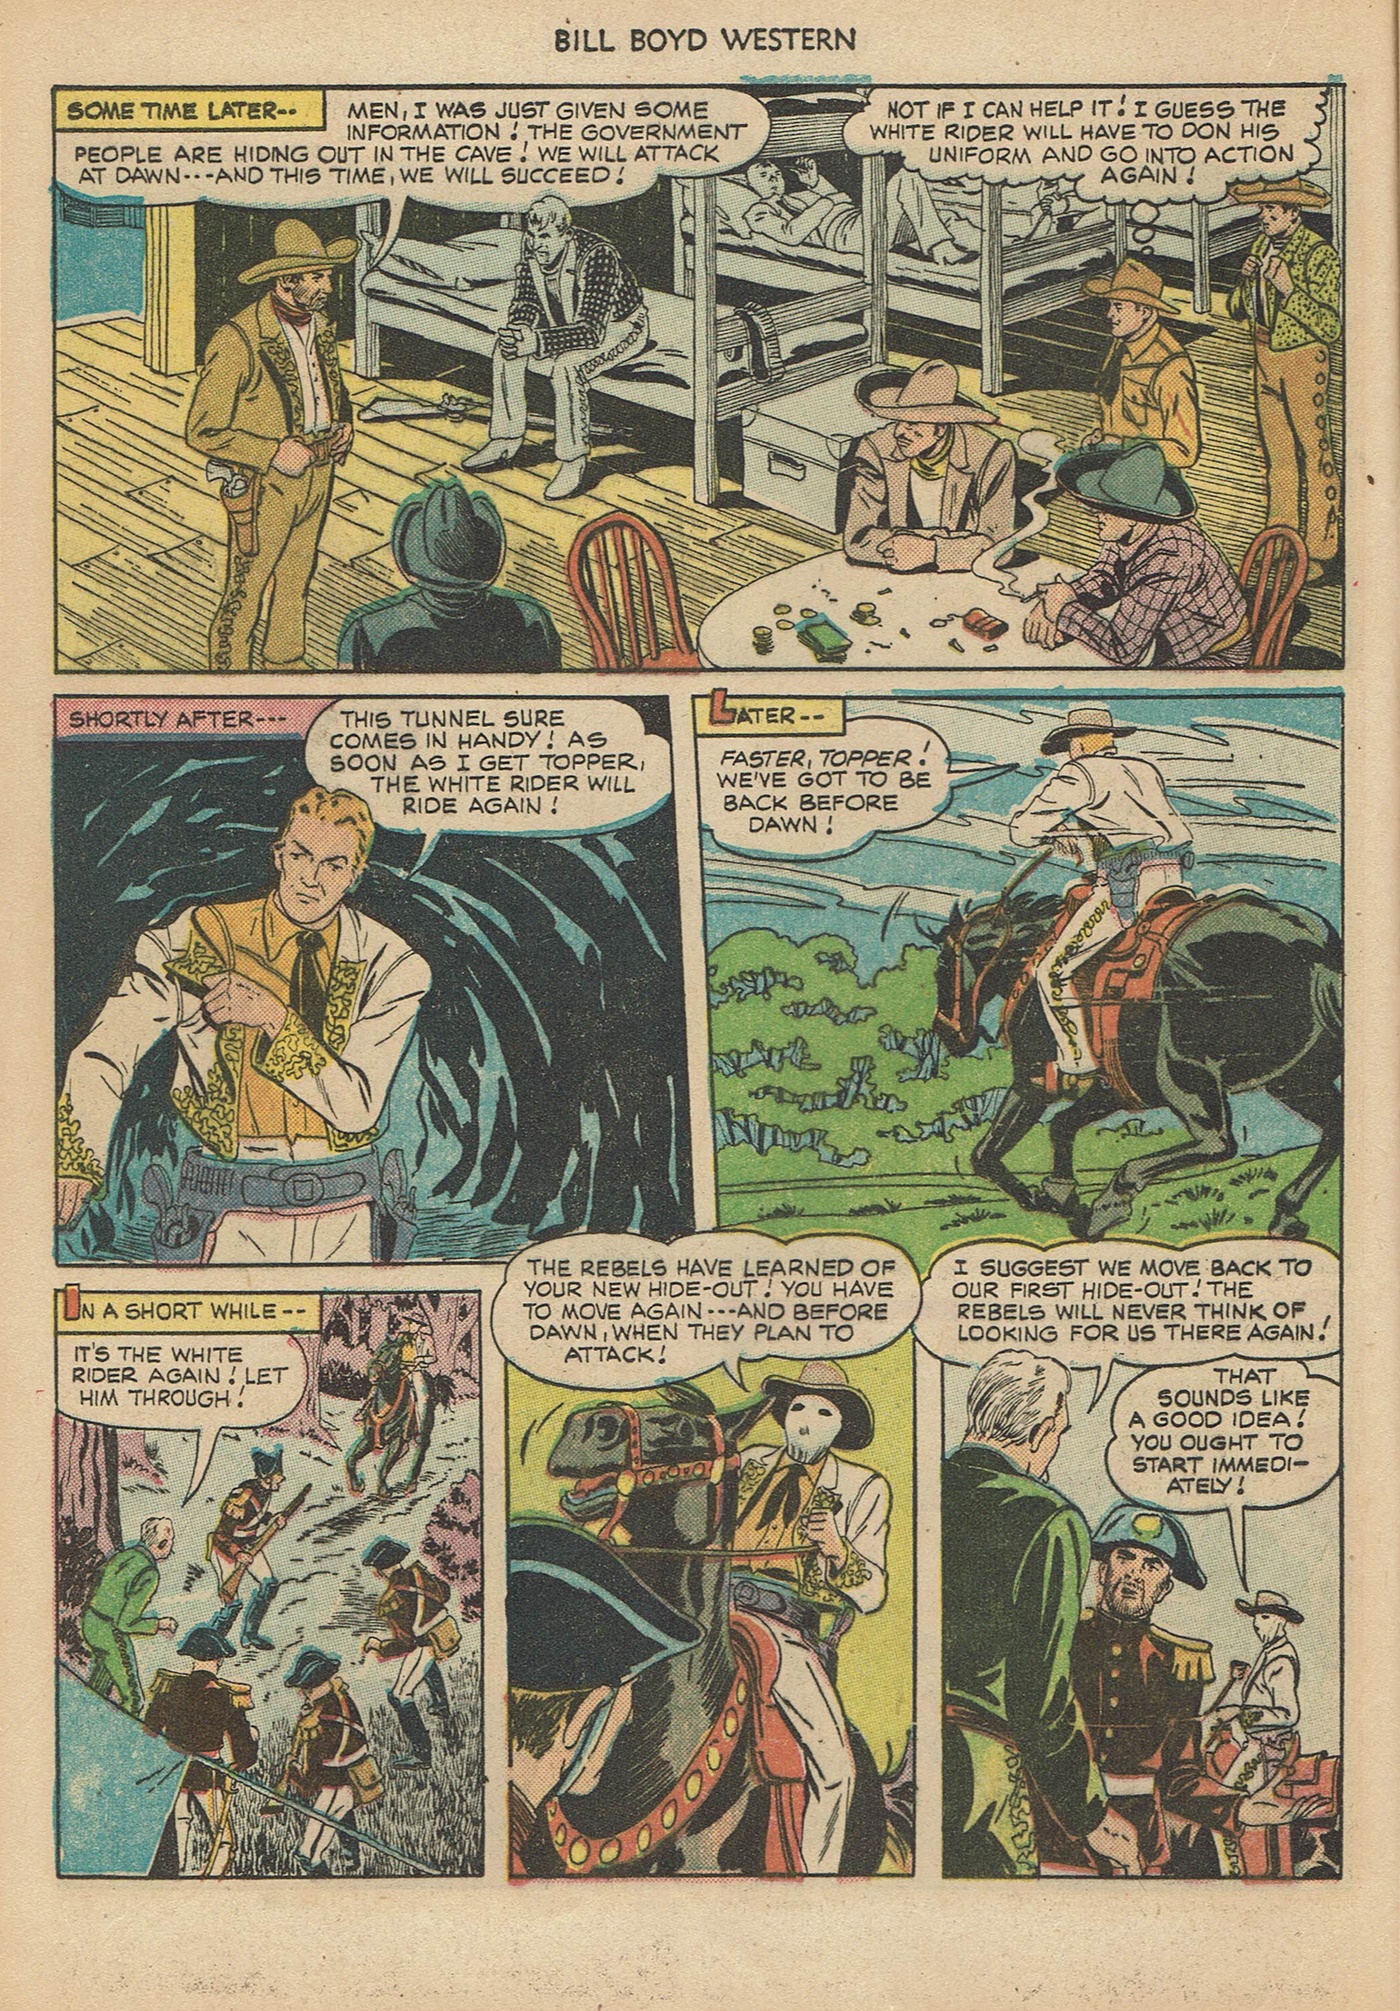 Read online Bill Boyd Western comic -  Issue #6 - 16